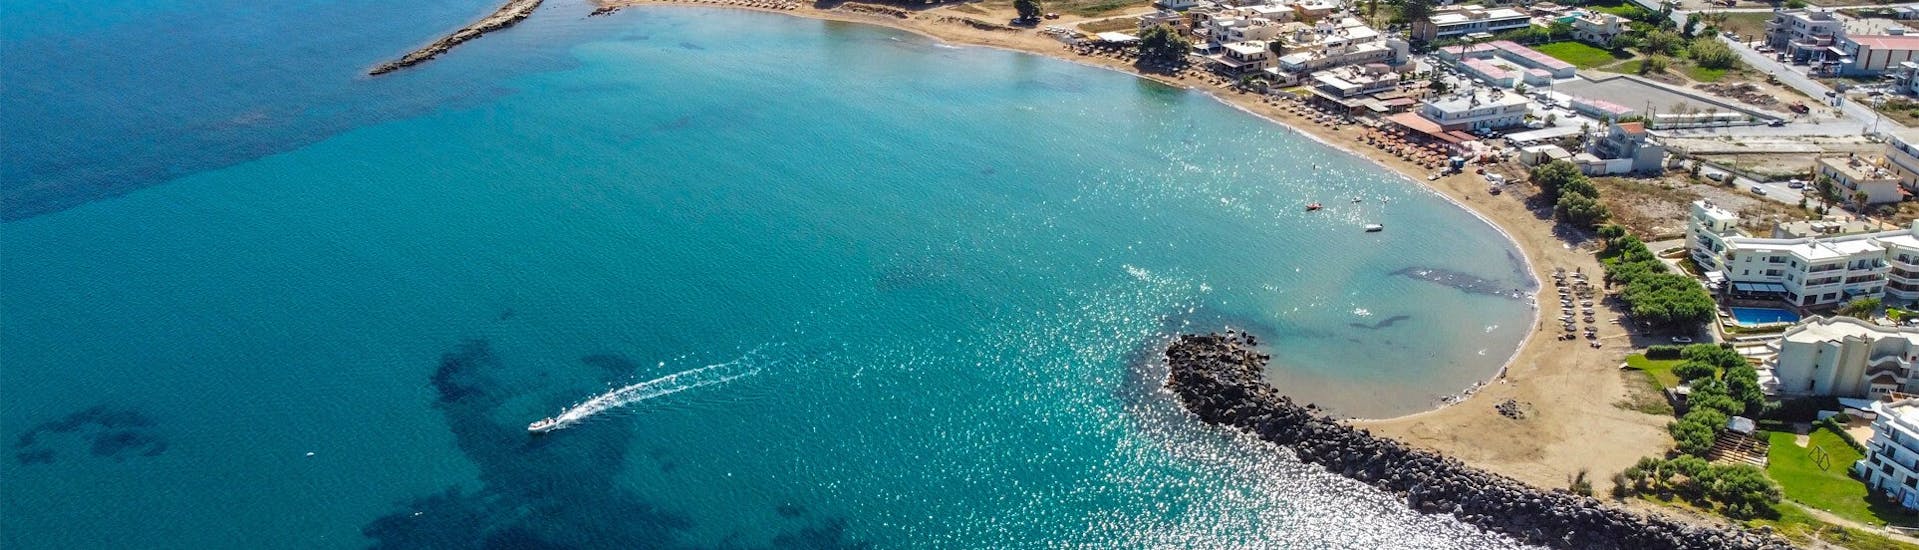 Il paesaggio di Kissamos con le sue acque turchesi durante il Noleggio SUP a Kissamos con Kissamos Sea Sports.